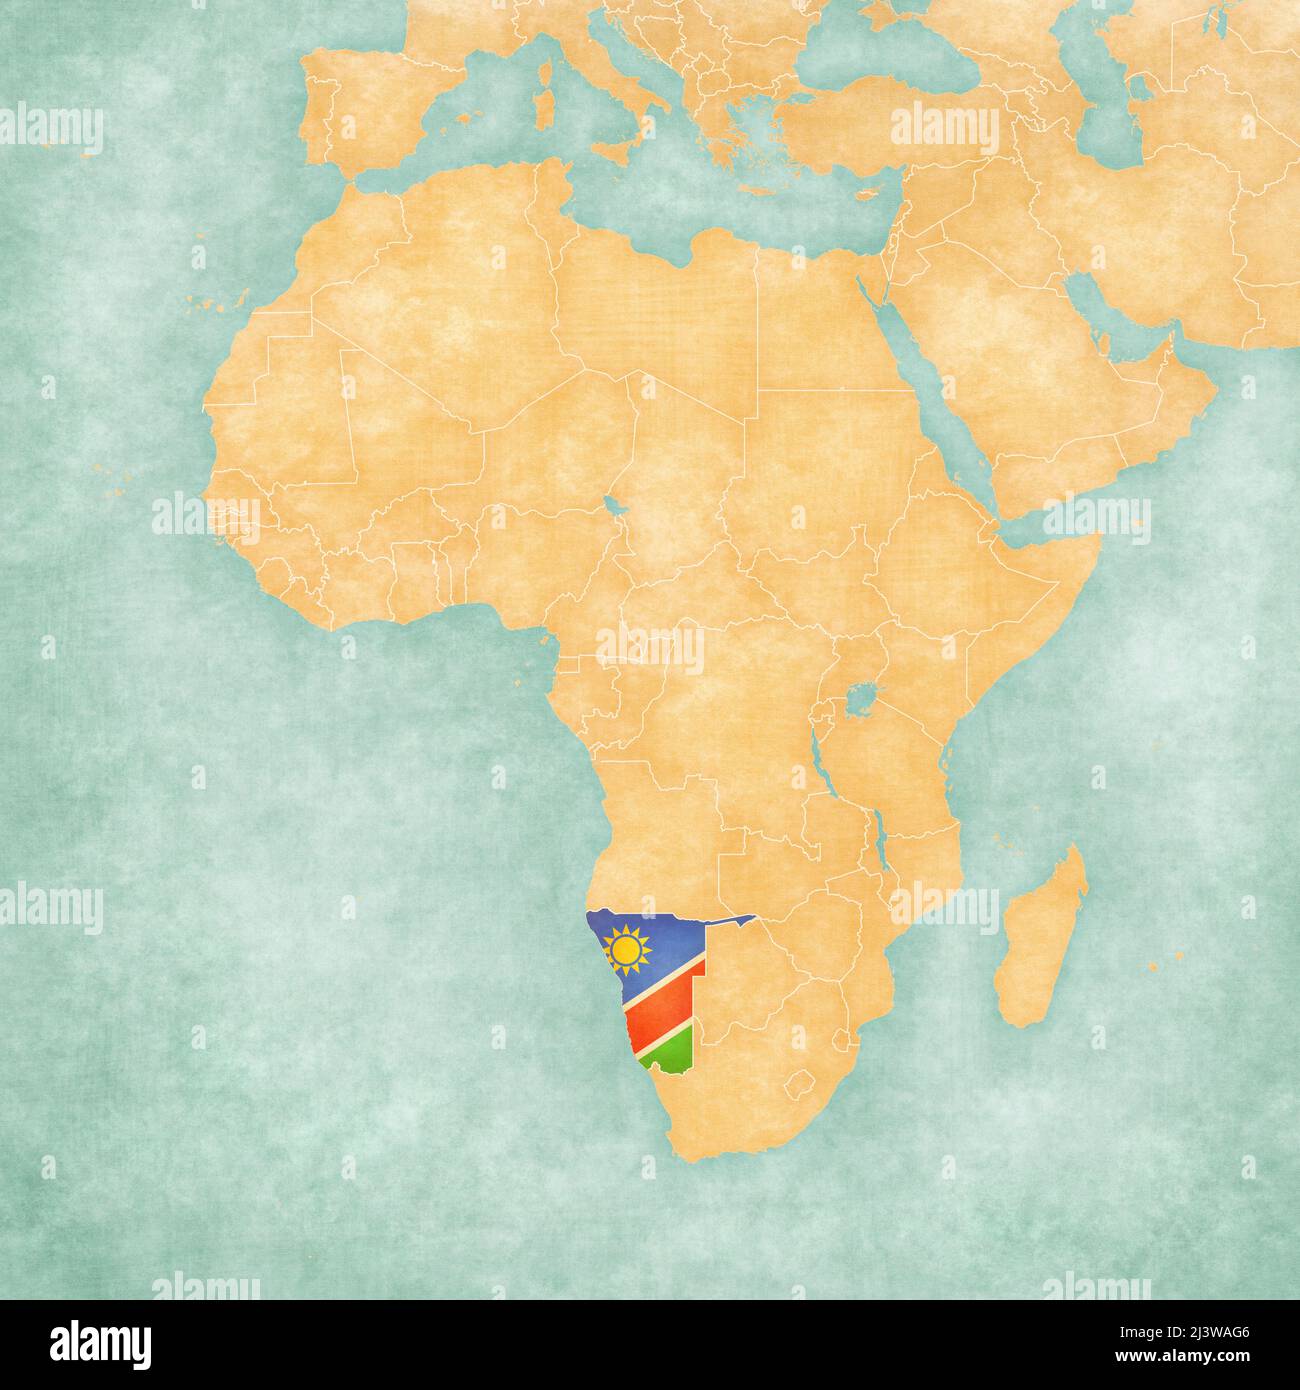 Namibia (namibische Flagge) auf der Karte von Afrika. Die Karte ist im weichen Grunge- und Vintage-Stil gehalten, wie Aquarell auf altem Papier. Stockfoto